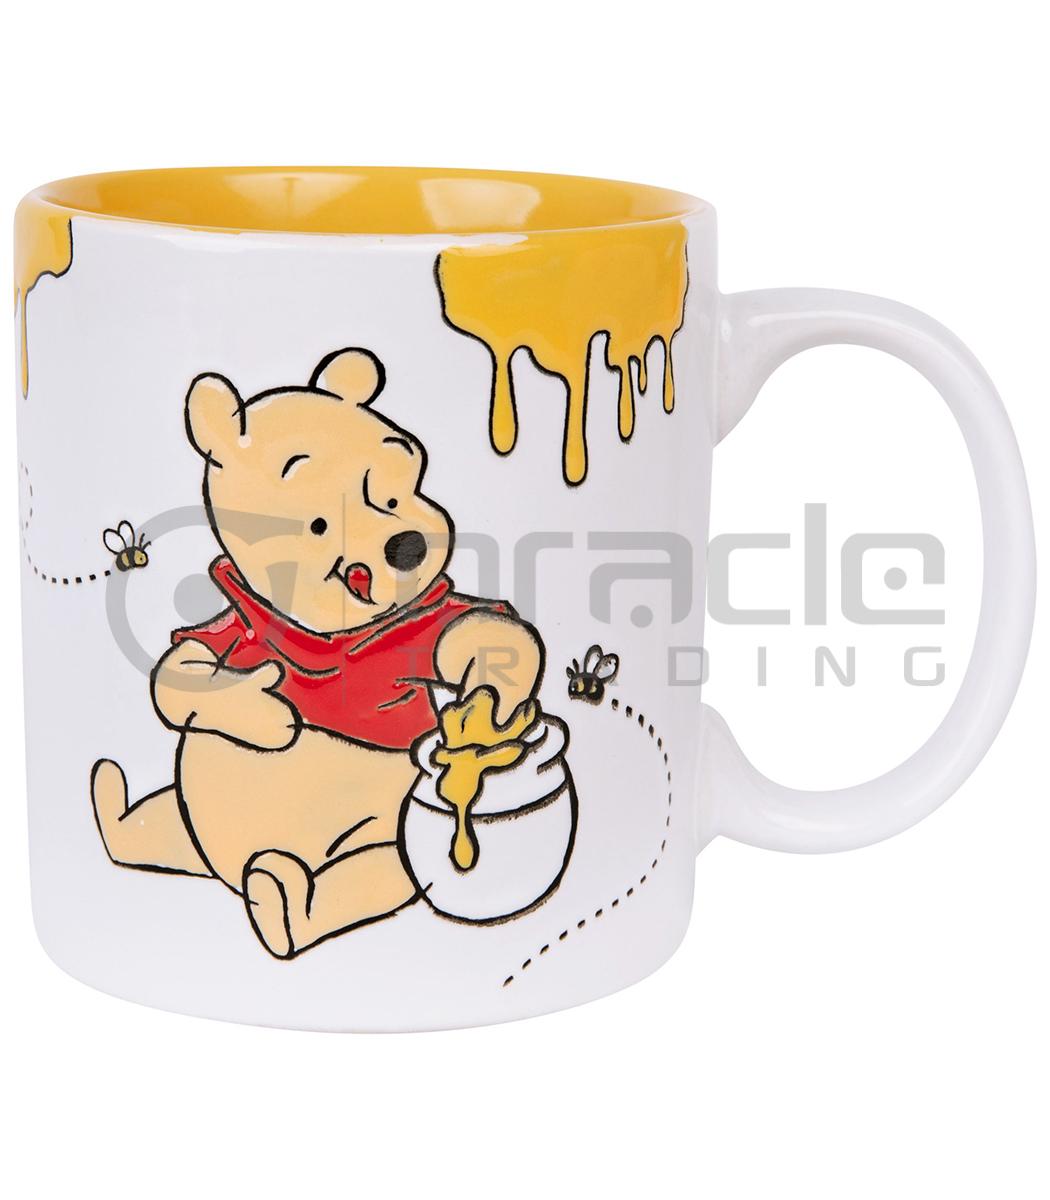 Winnie the Pooh Jumbo Mug - Happy Face